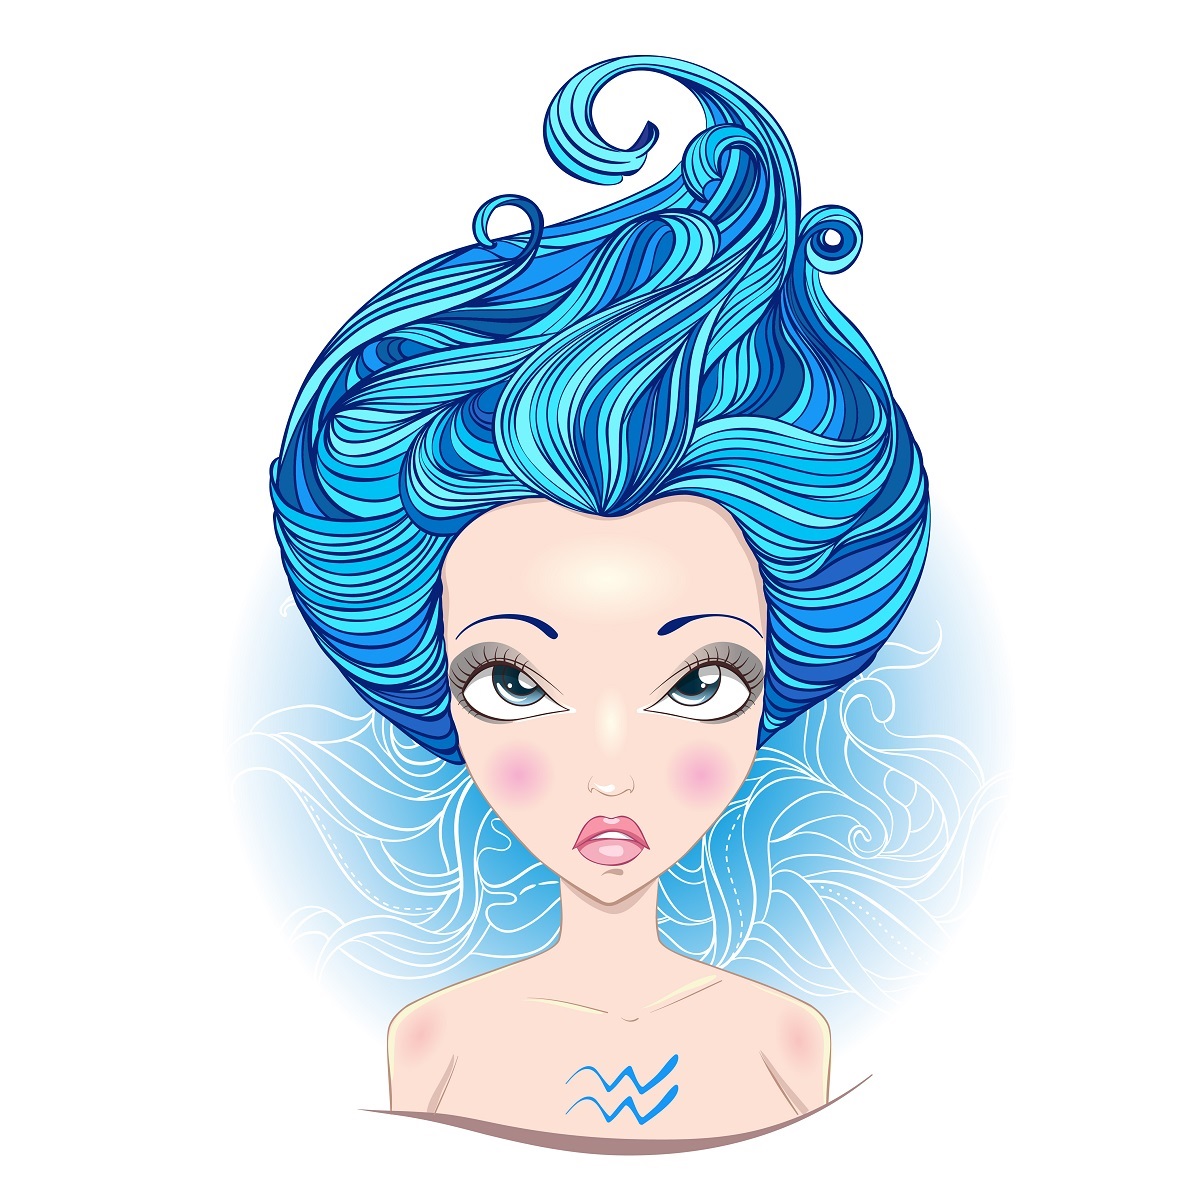 O femeie frumoasa cu parul albastru reprezentand zodia Vărsătorului